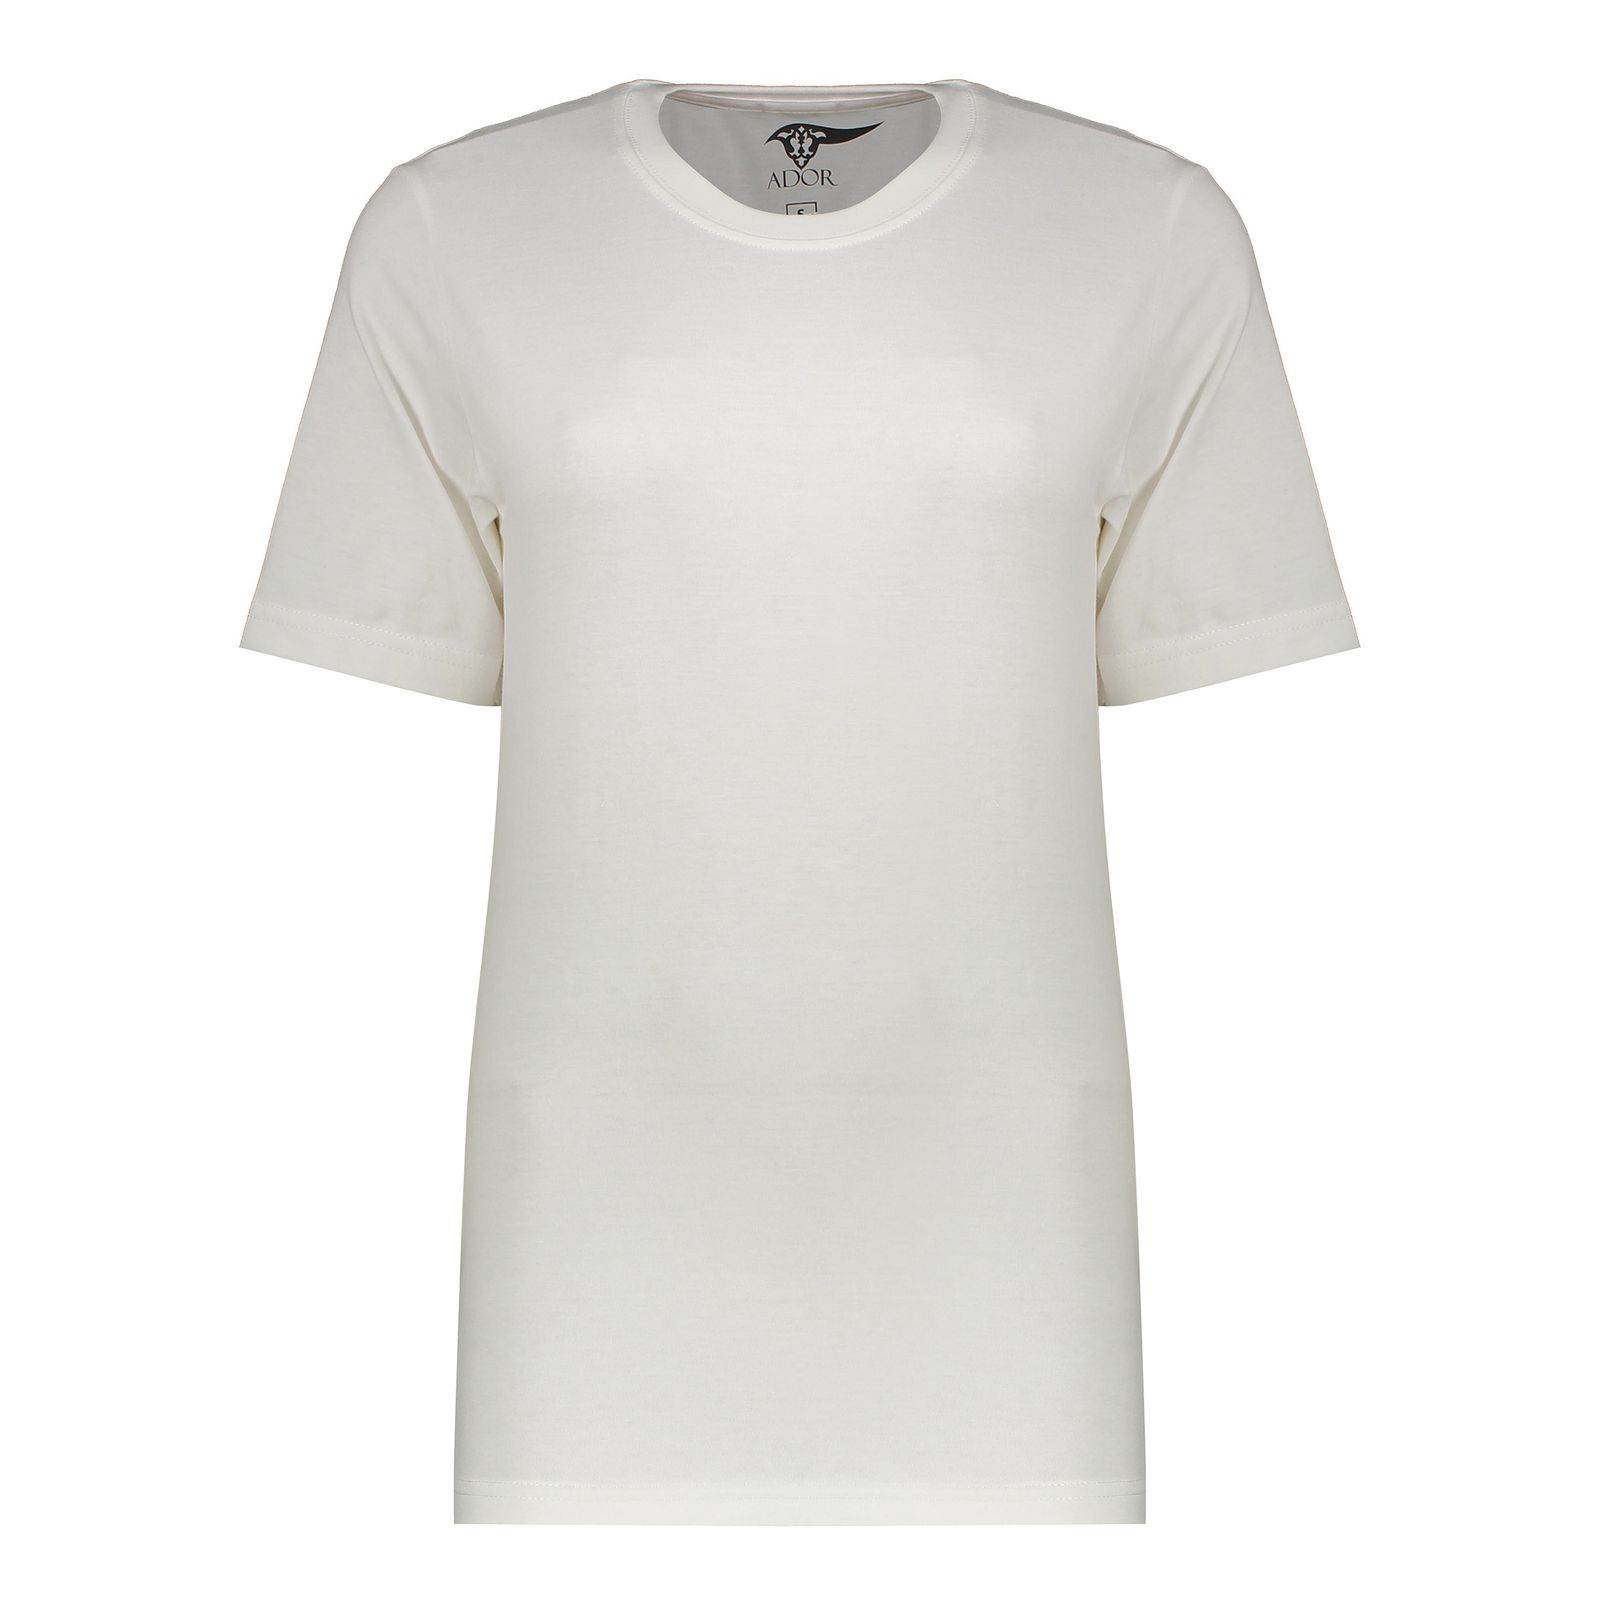 تی شرت آستین کوتاه زنانه آدور مدل شاهنامه رنگ سفید -  - 1